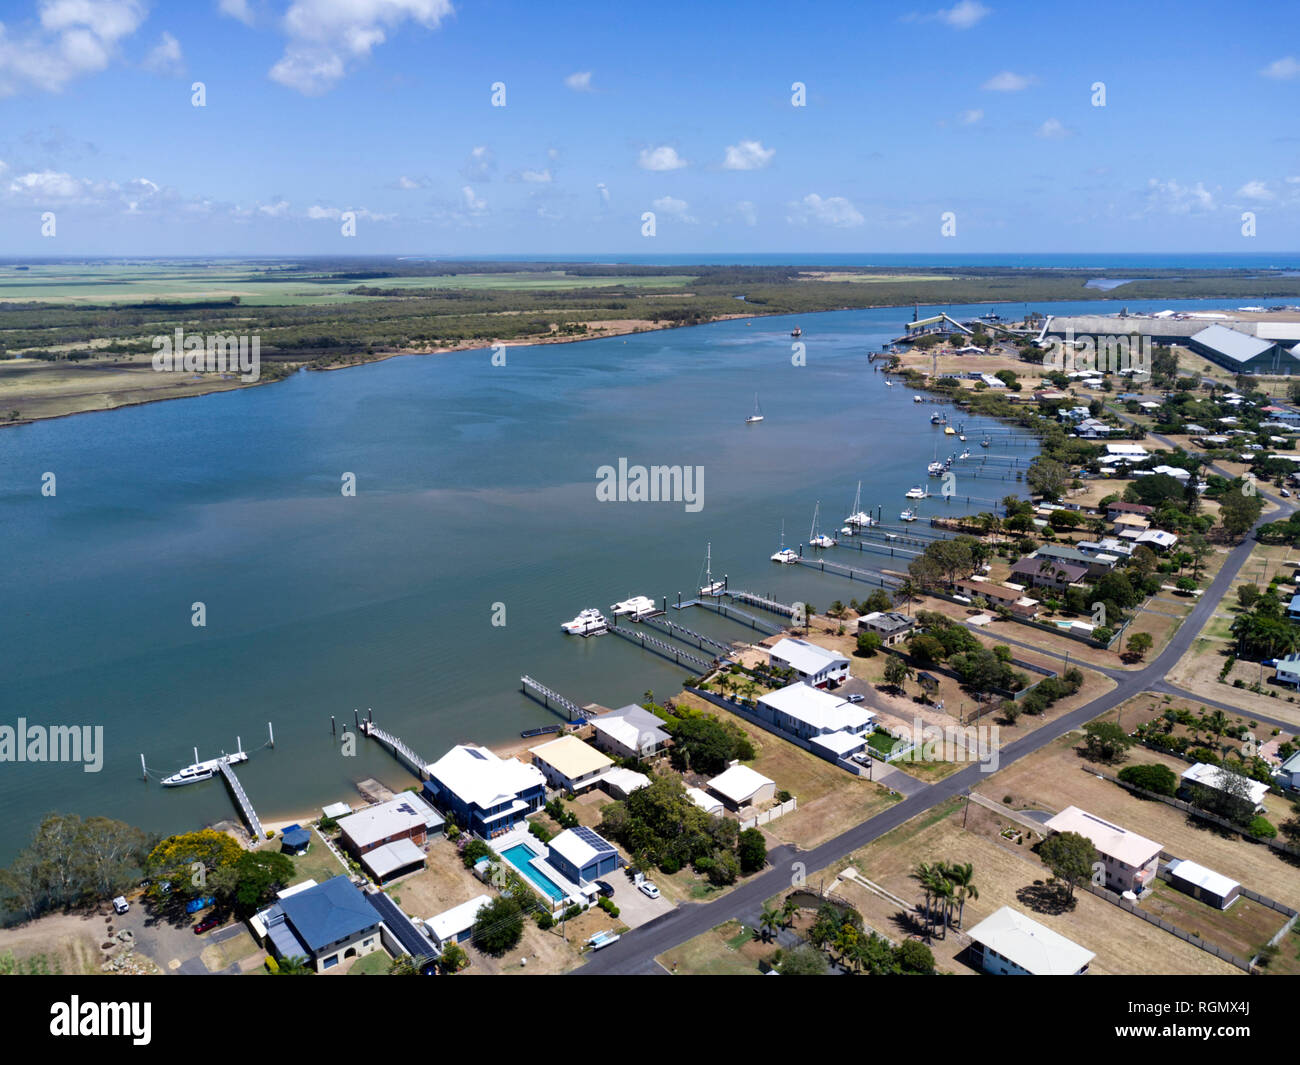 Vue aérienne de maisons avec leur propre jetée privée sur la rivière Burnett Burnett à Bundaberg, Queensland Australie Chefs Banque D'Images